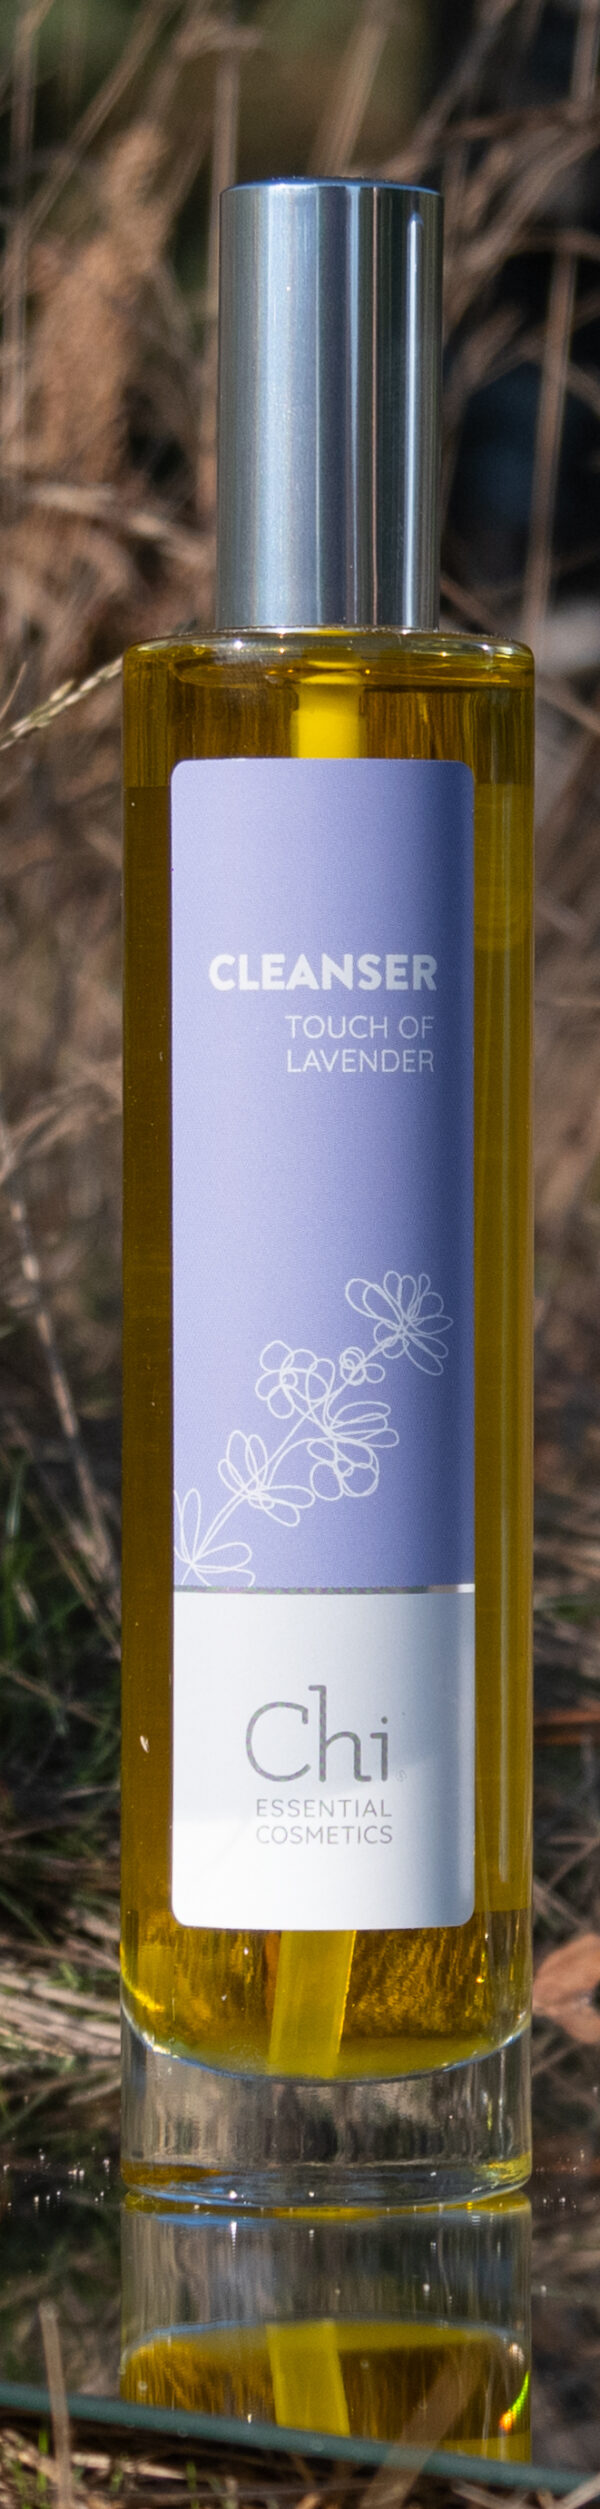 Cleanser Lavender Heide